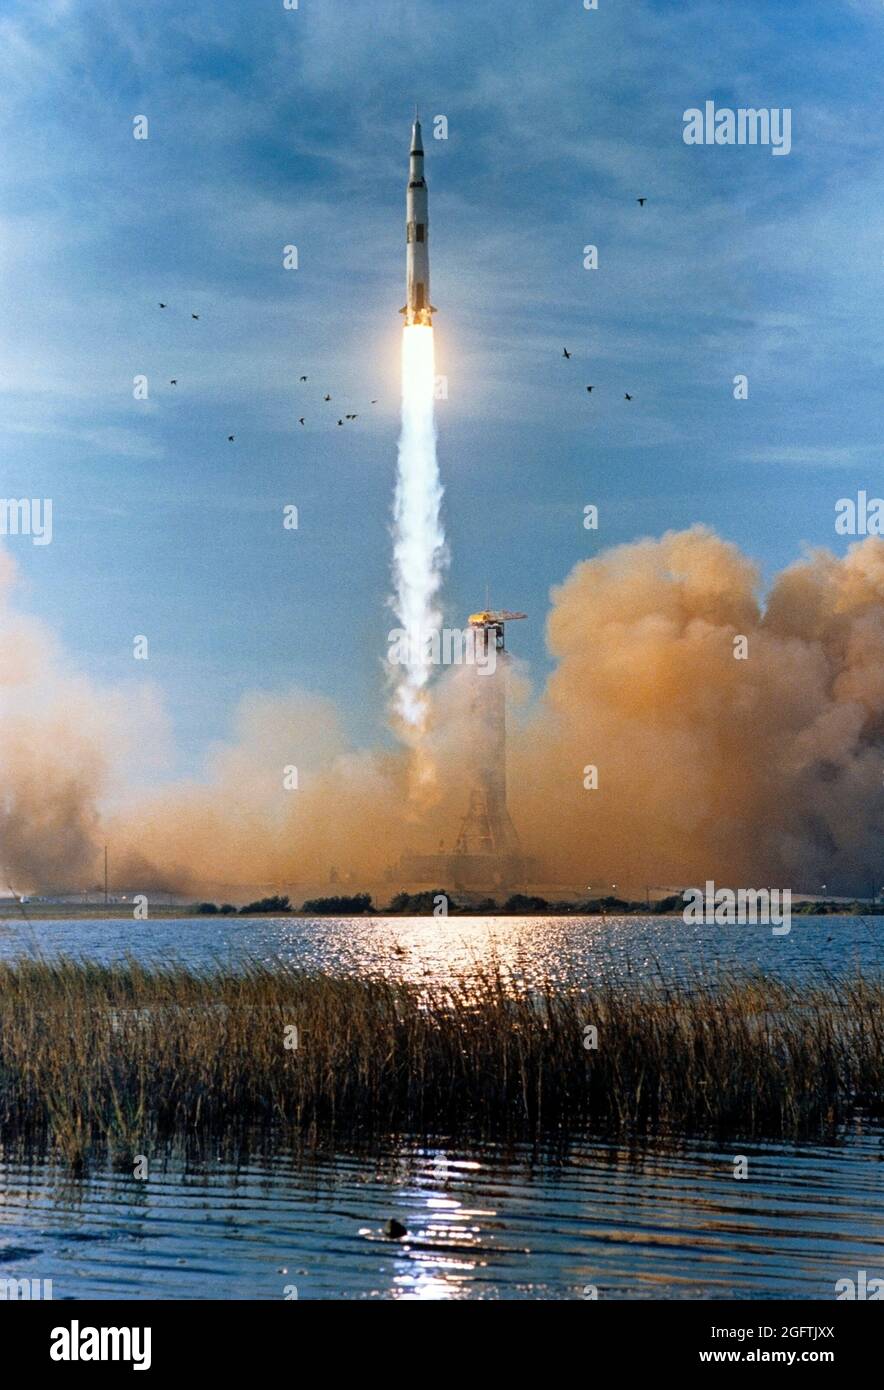 (21. Dezember 1968)--- das Raumfahrzeug Apollo 8 (Raumschiff 103/Saturn 503) wird von Pad A, Launch Complex 39, Kennedy Space Center (KSC), am 21. Dezember 1968 um 7:51 Uhr (EST) gestartet. Die Besatzung der Apollo 8-Mondbahnmission sind die Astronauten Frank Borman, Kommandant; James A. Lovell Jr., Kommandomodulpilot; und William A. anders, Mondmodulpilot. Apollo 8 ist der erste bemannte Saturn V Launch Stockfoto